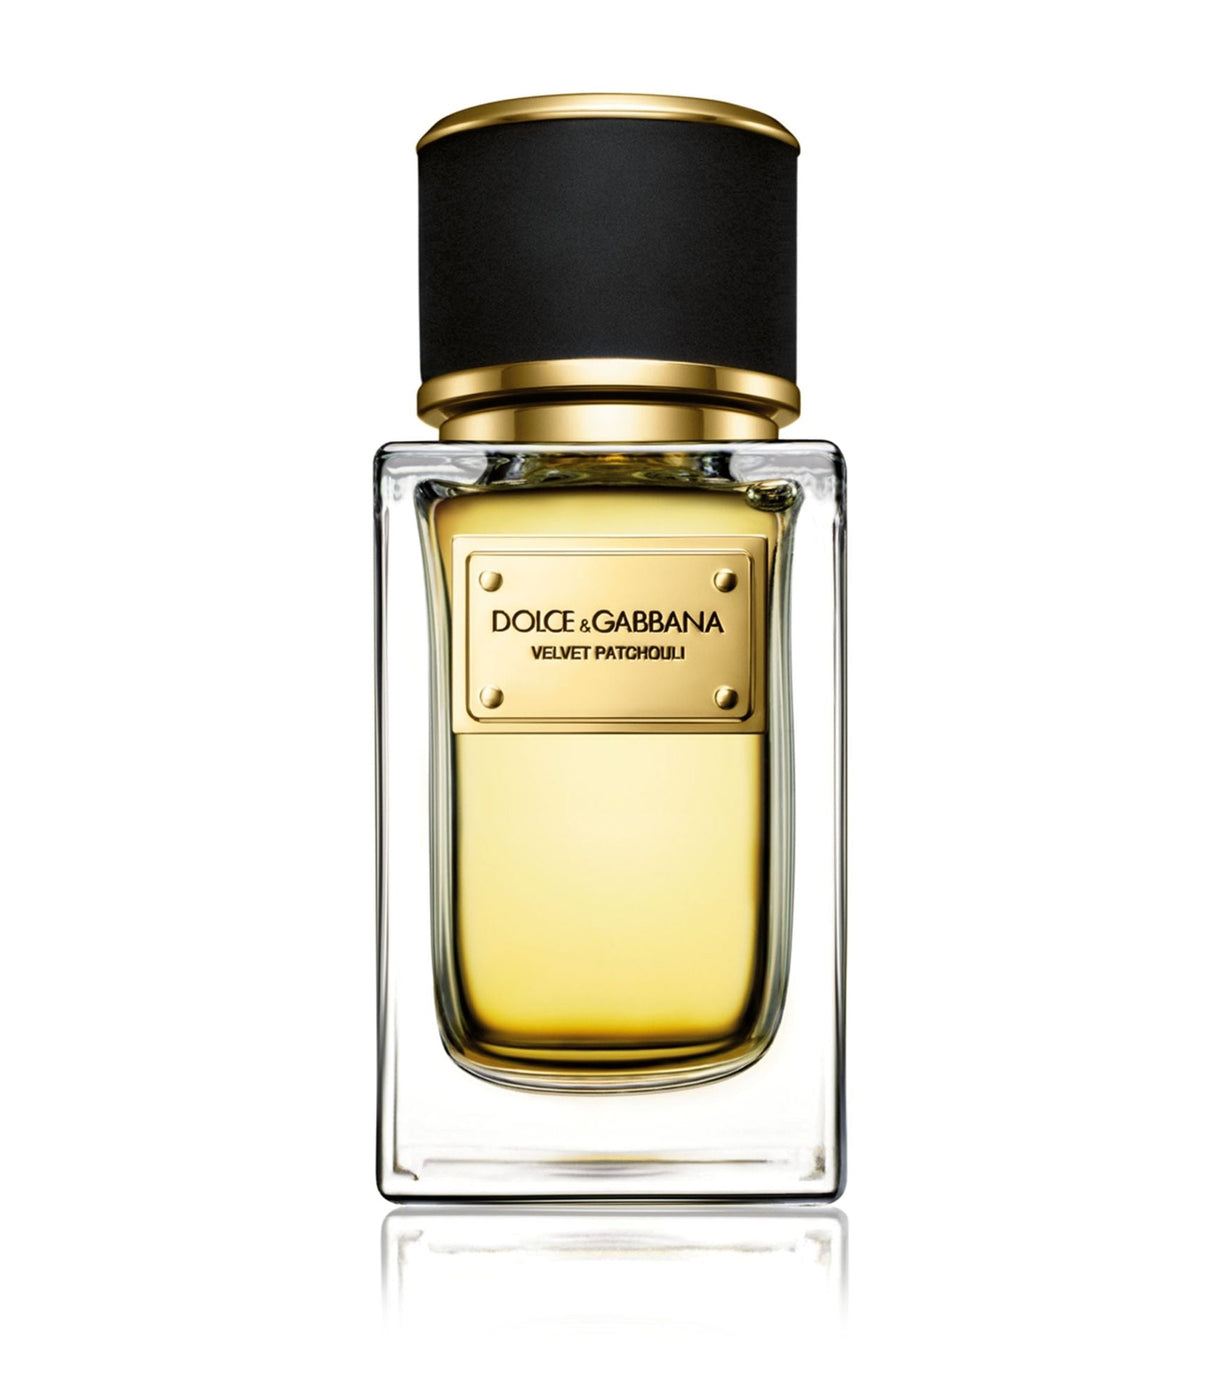 Dolce & Gabbana Velvet Patchouli Eau De Parfum